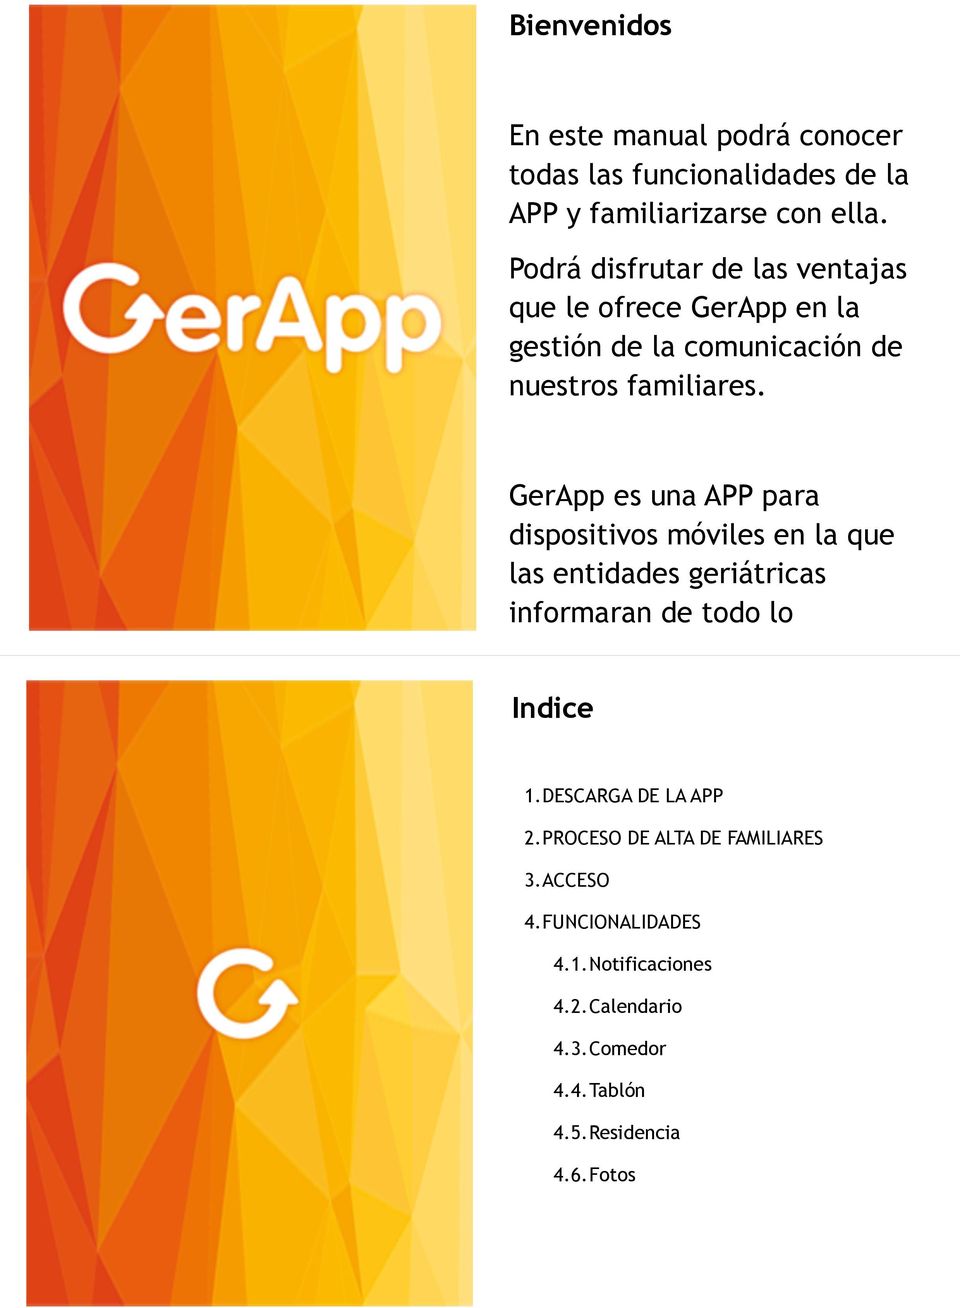 GerApp es una APP para dispositivos móviles en la que las entidades geriátricas informaran de todo lo Indice 1.